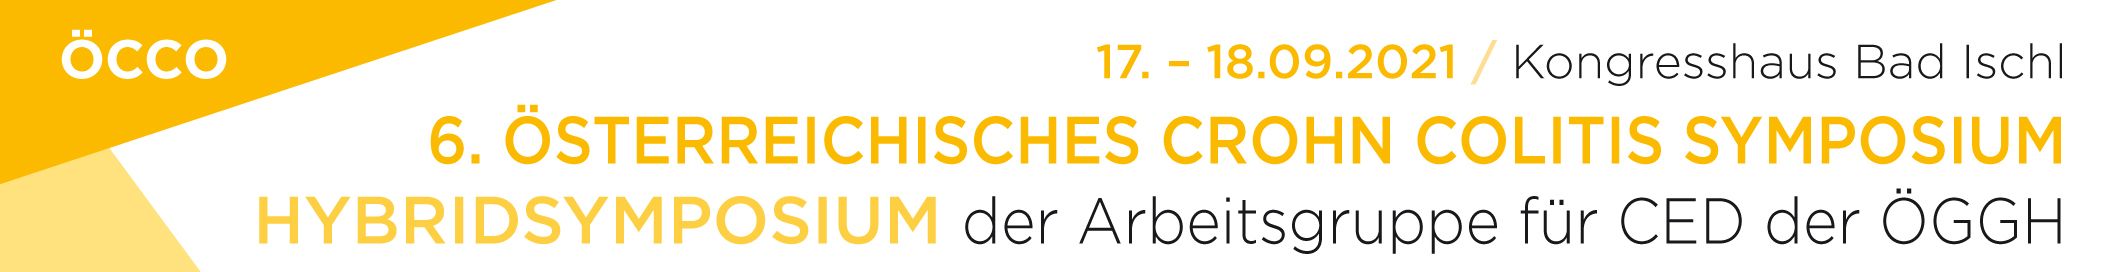 Österreichisches Crohn Colitis Symposium der Arbeitsgruppe für CED der ÖGGH